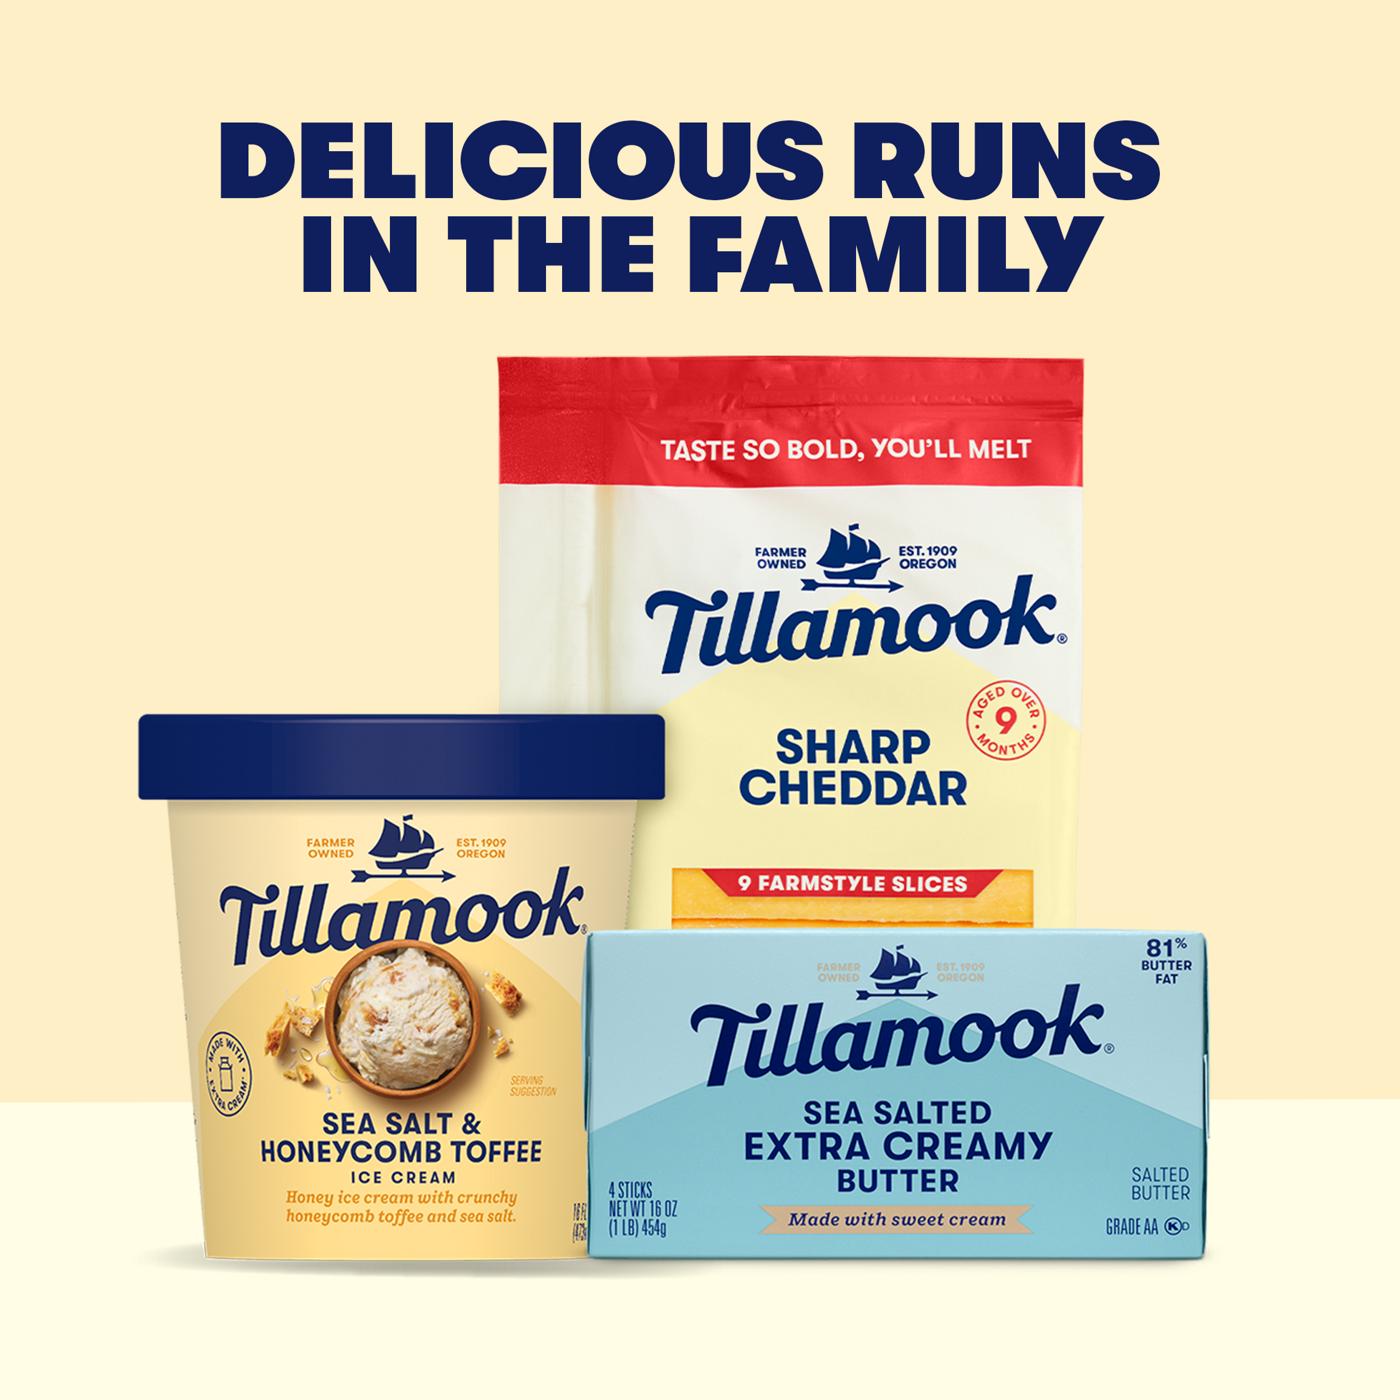 Tillamook Sea Salt & Honeycomb Toffee Ice Cream; image 2 of 2